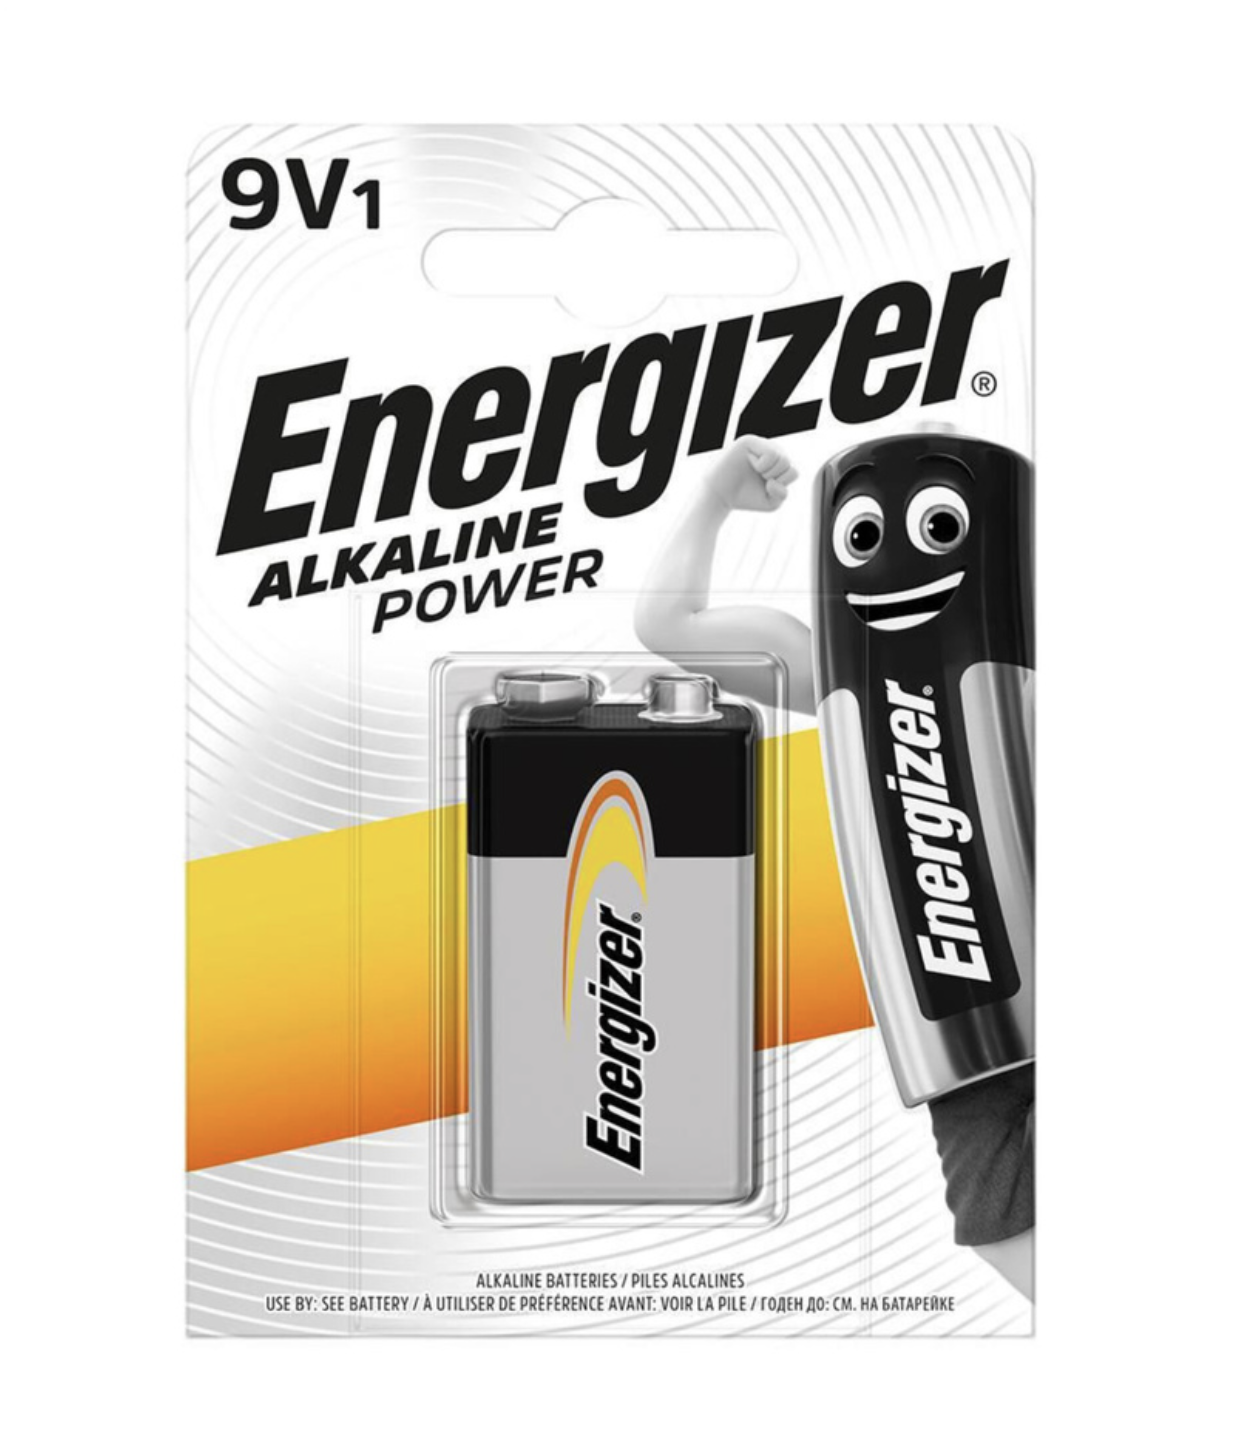   / Energizer -  Alkaline Power 6LR61 BL1 9V 1 